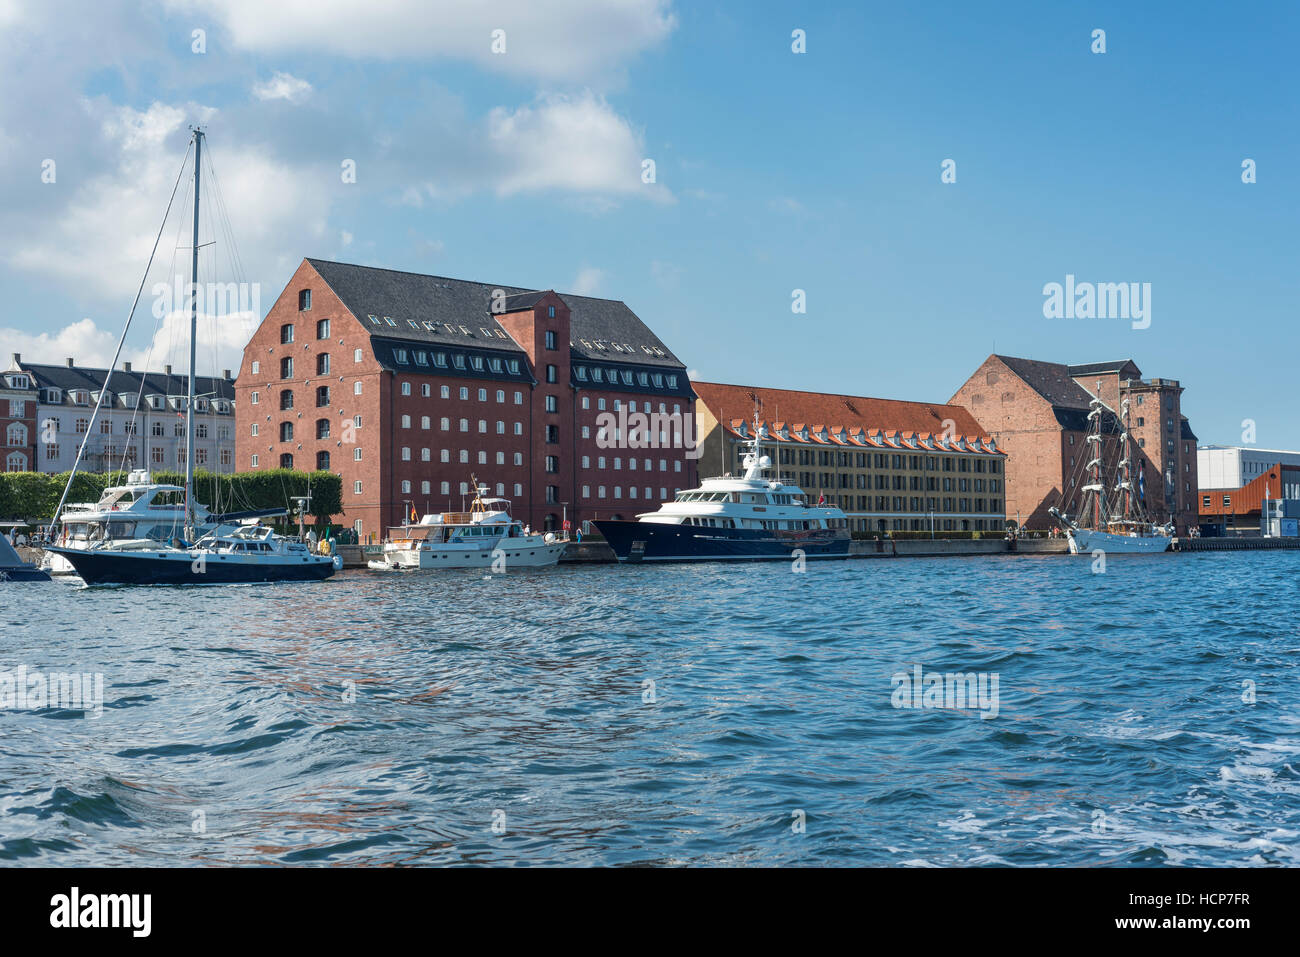 Maisons de stockage et des yachts, du Port Royal, Cast Collection droit, Copenhague, Danemark Banque D'Images